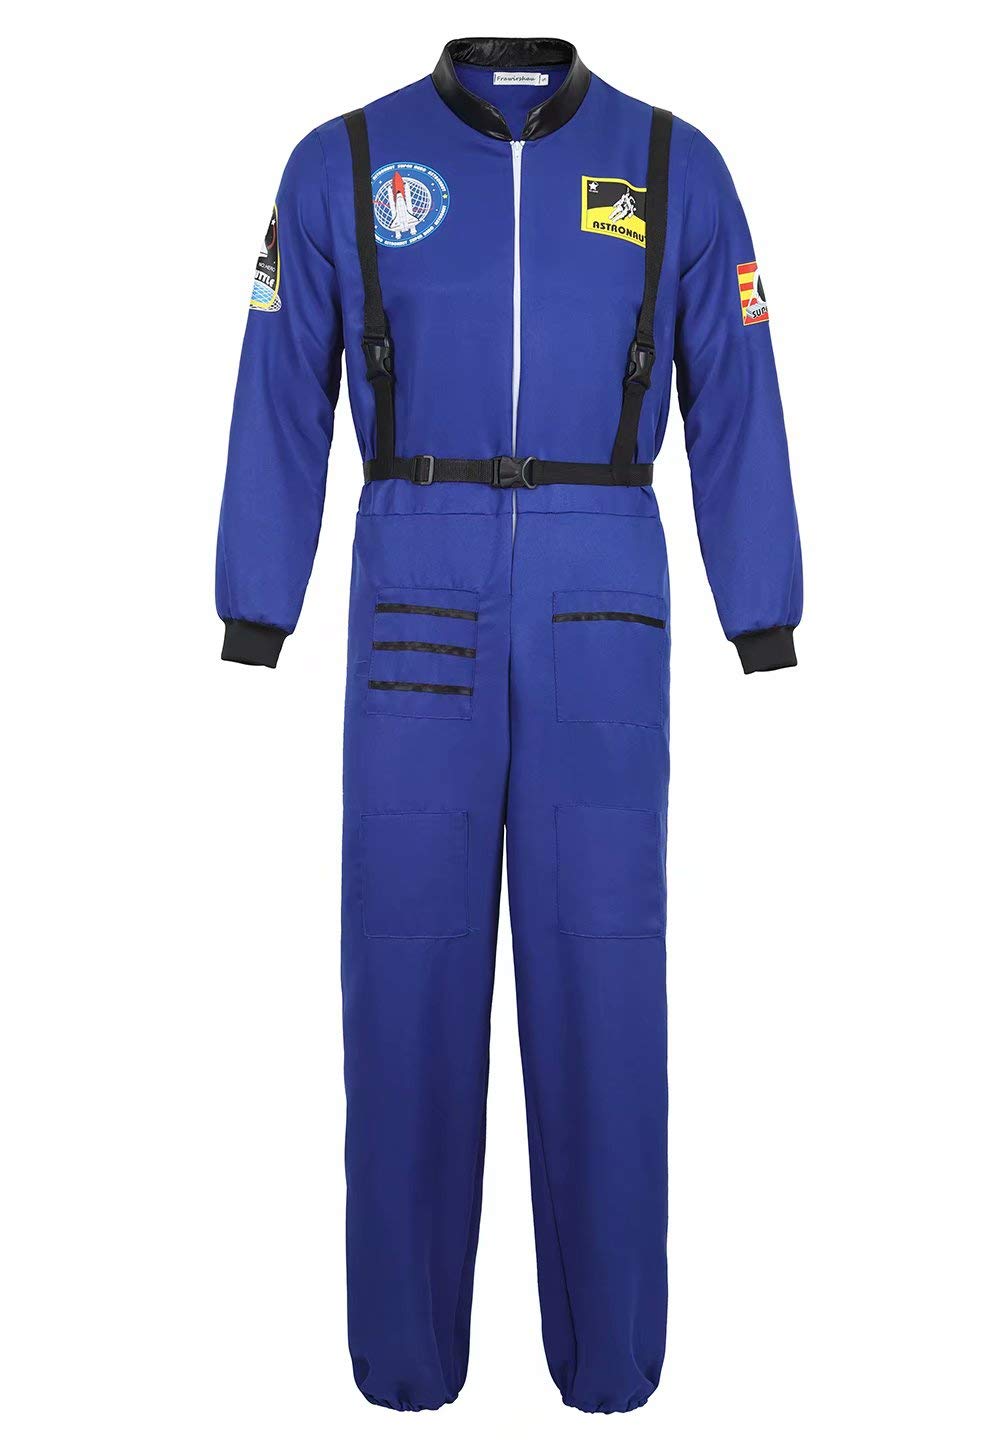 Josamogre Astronauten Kostüm Erwachsene Herren Kostüm Astronau Anzugt Weltraum Raumfahrer Halloween Cosplay Blau 2xl